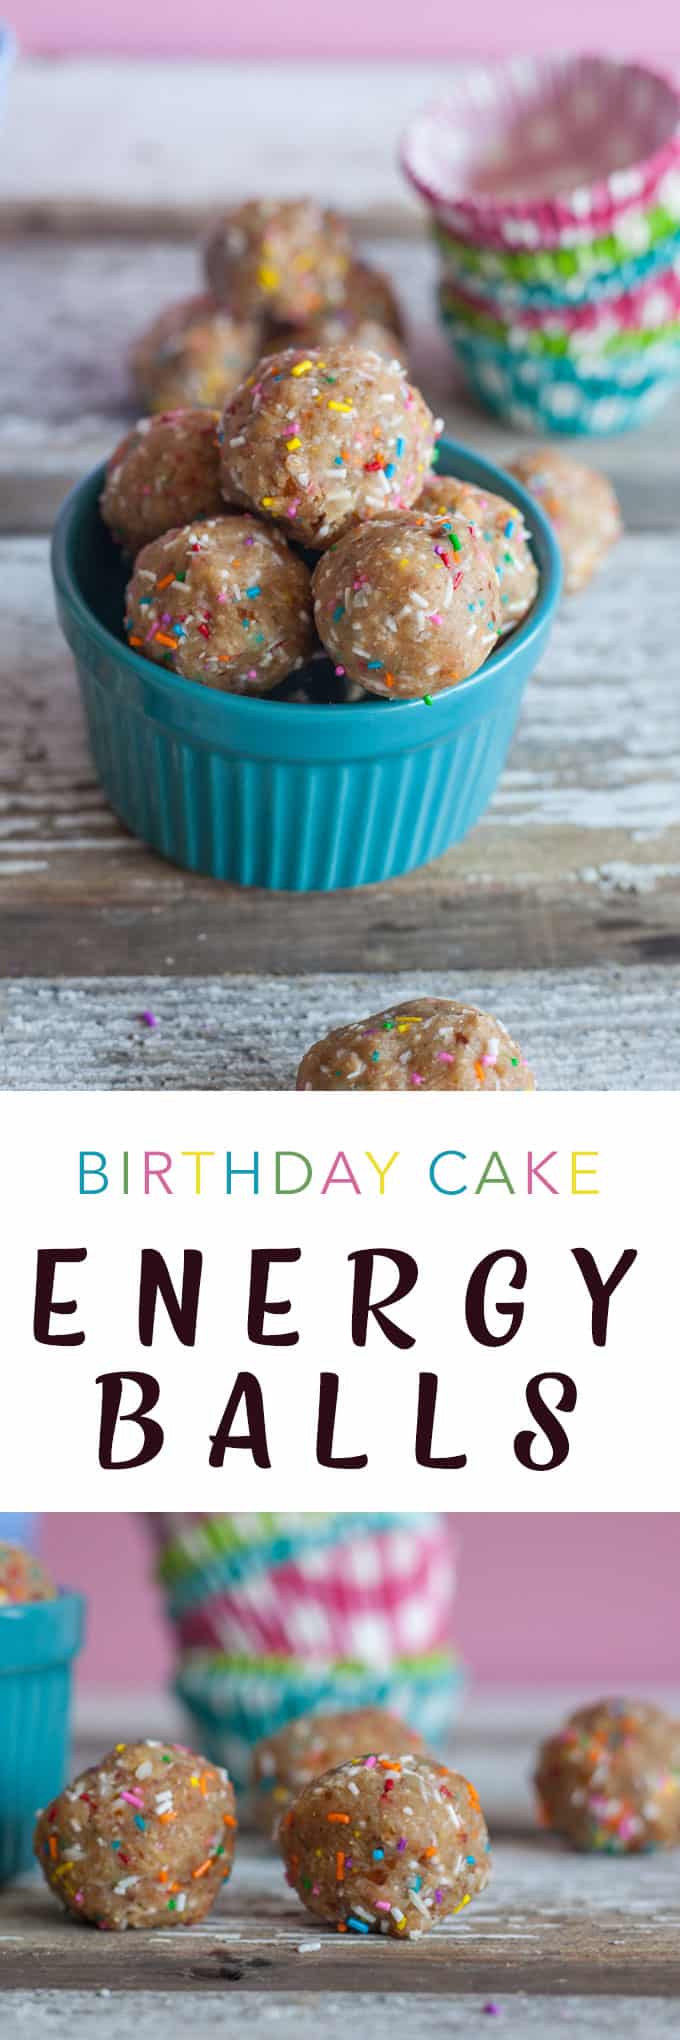 energy bites no bake birthday cake